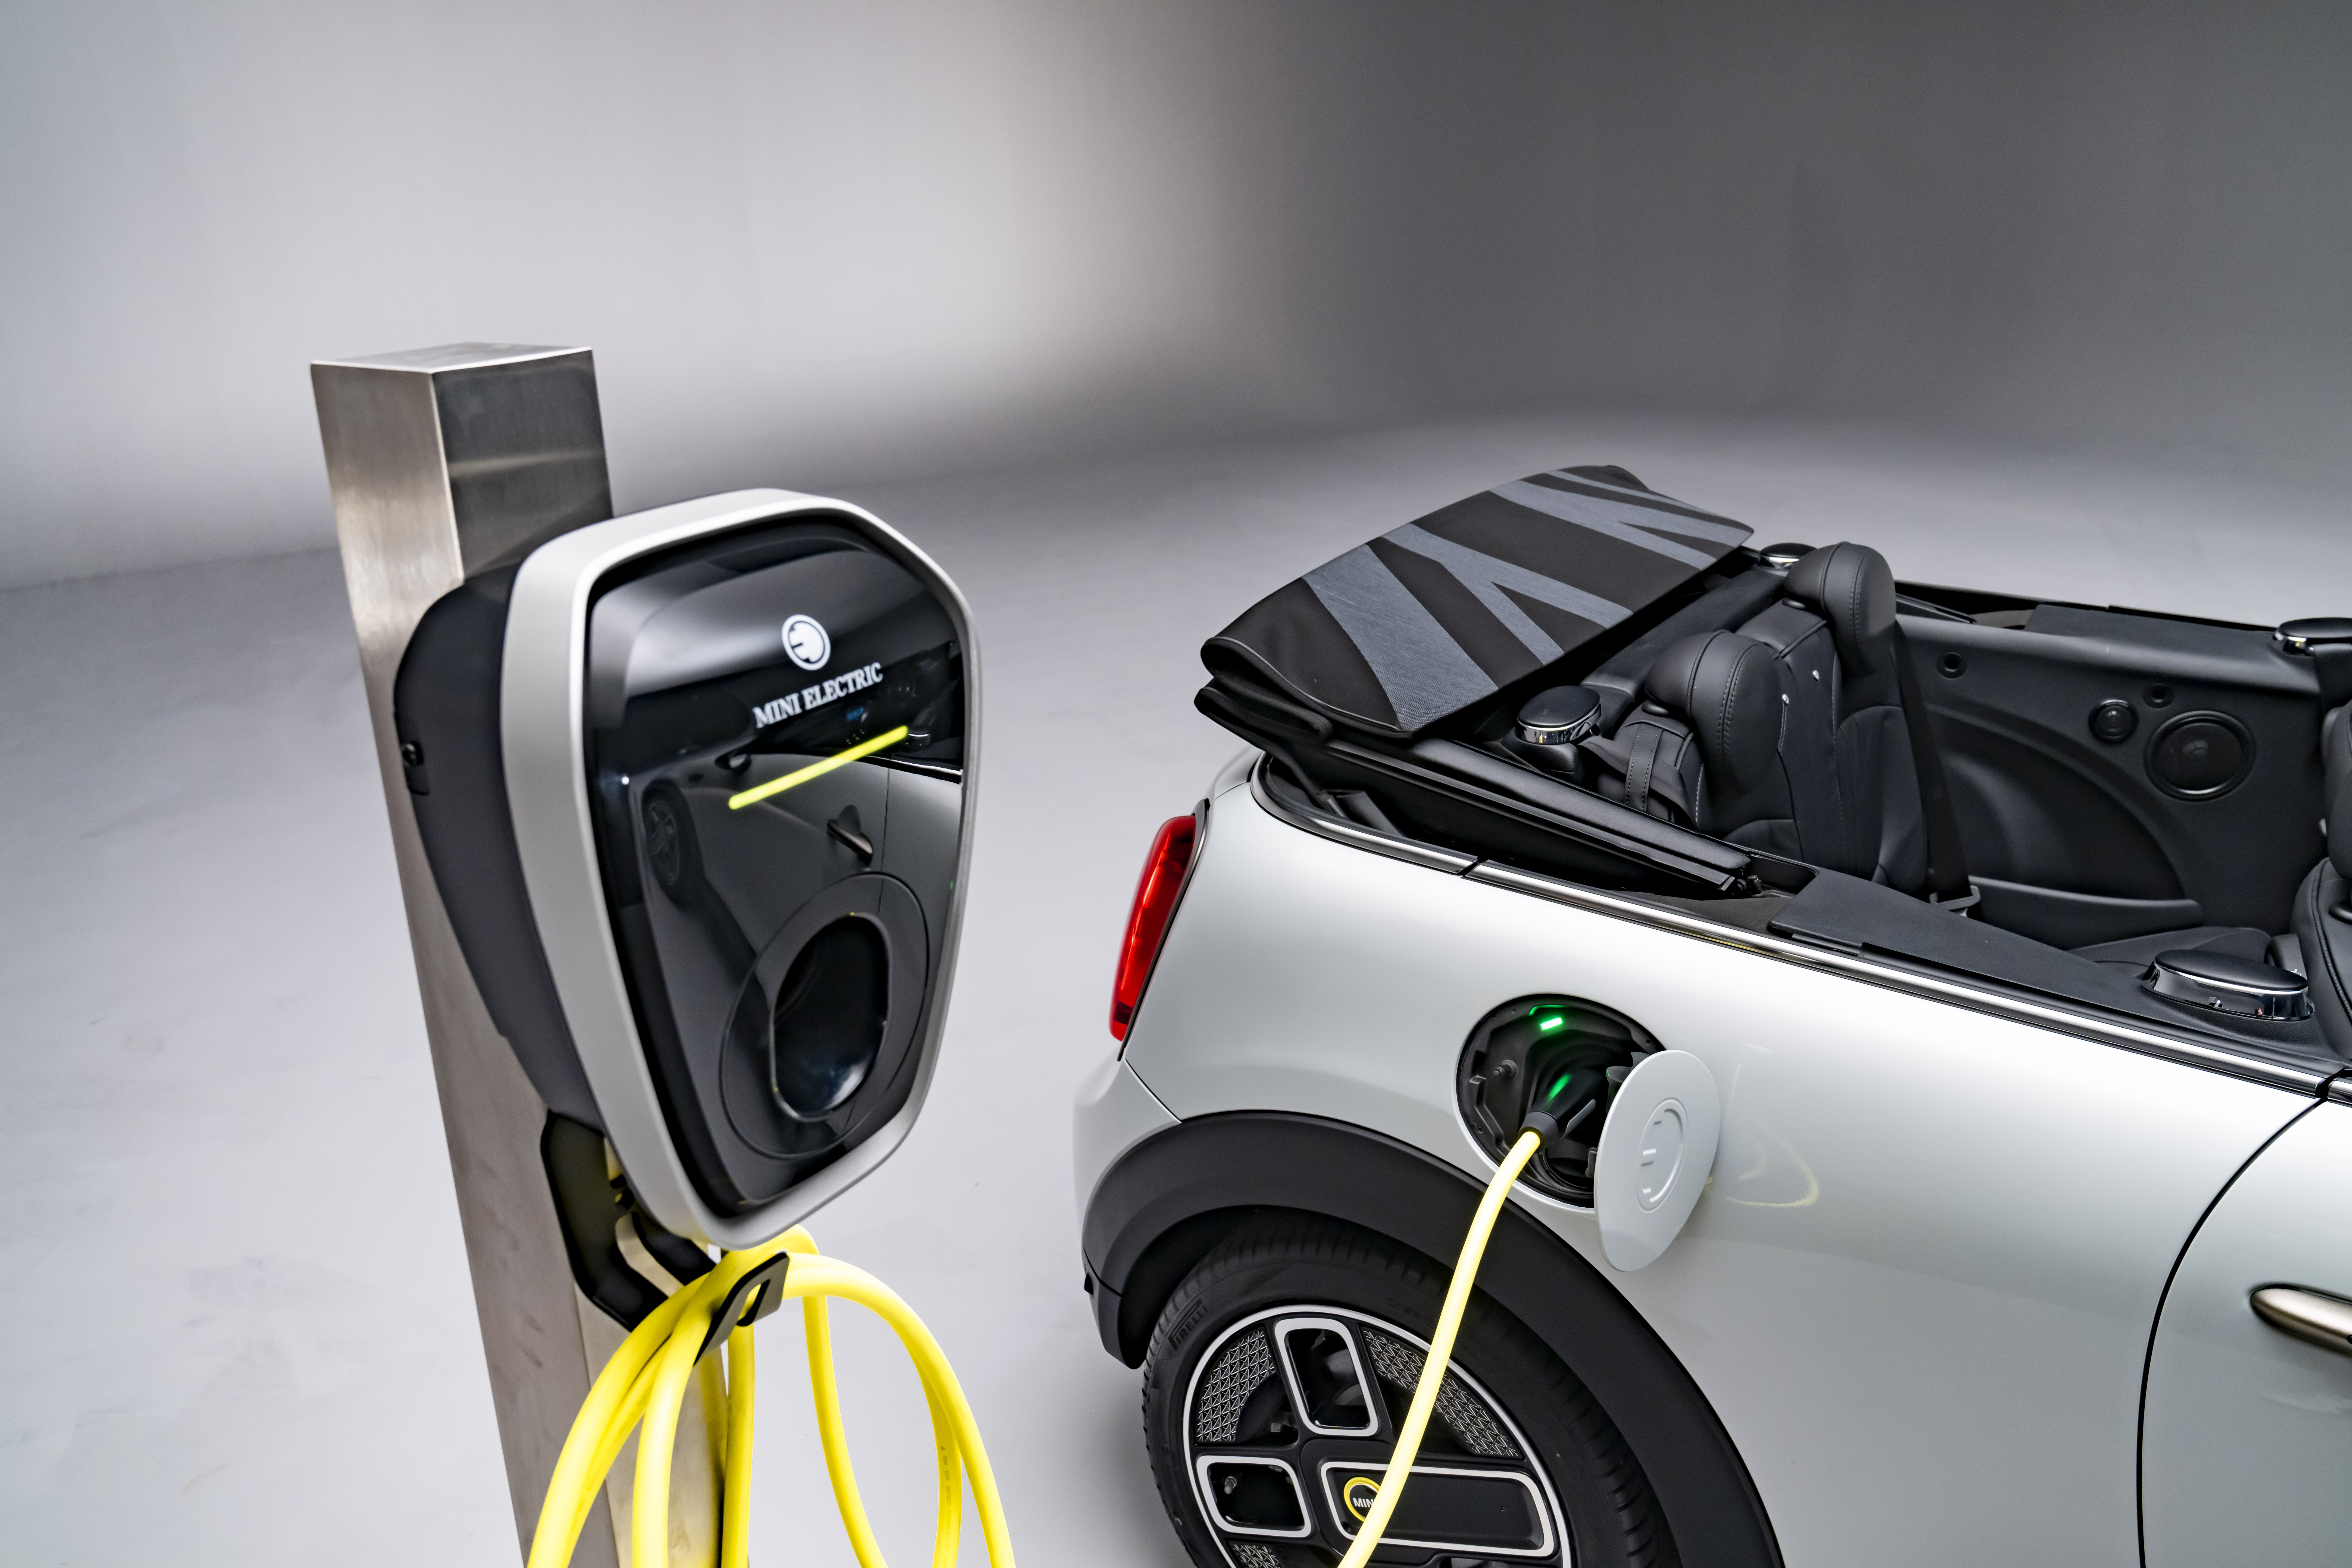 Clássico inglês Mini Cooper ganha conversão e se torna um carro elétrico  usando novo sistema da Nissan - CPG Click Petroleo e Gas